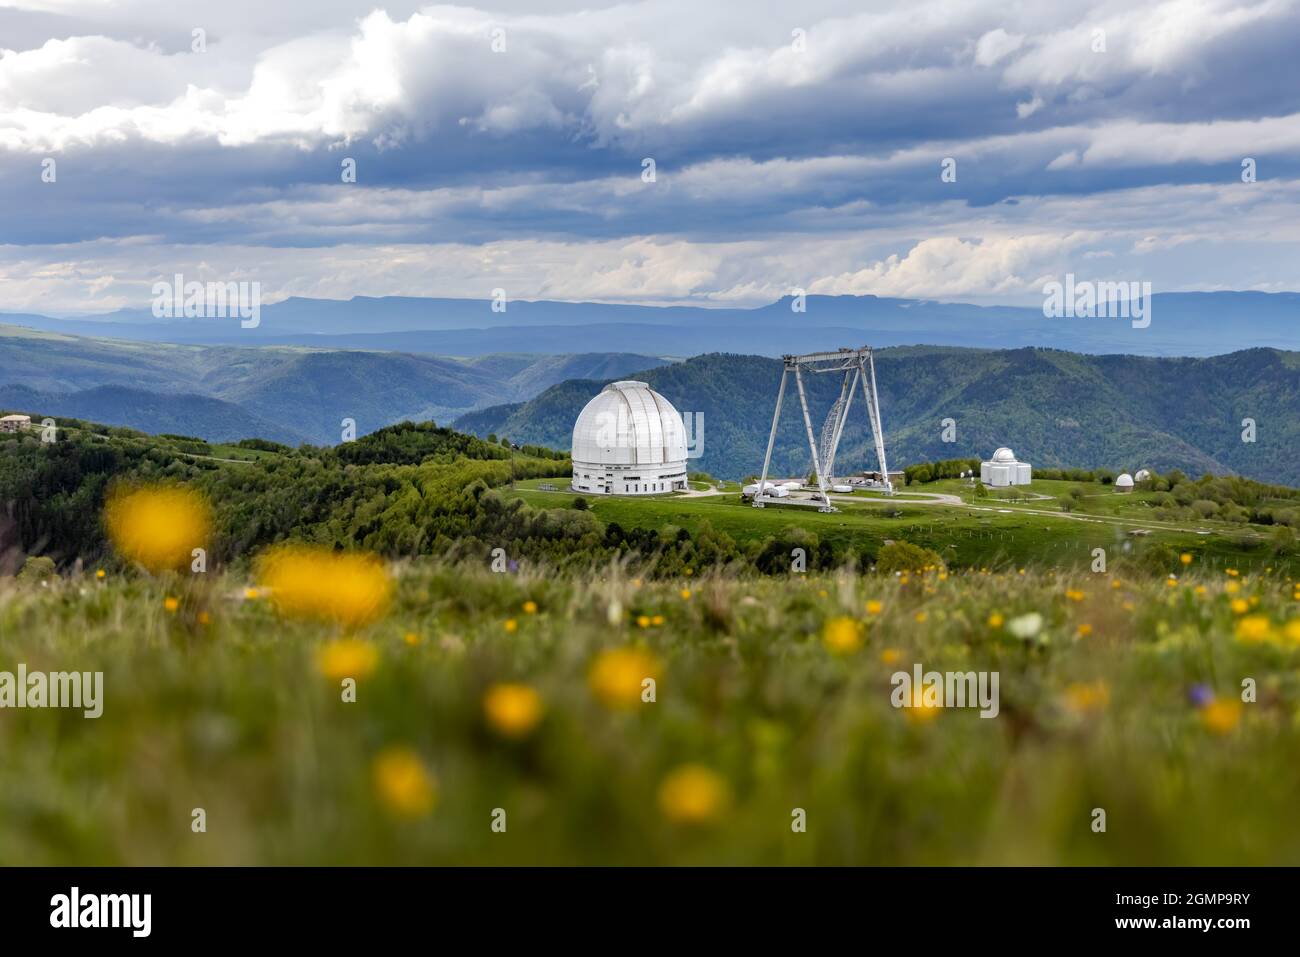 Spezielle wissenschaftliche astrophysikalische Sternwarte. Astronomisches Zentrum für bodengestützte Beobachtungen des Universums mit einem großen Teleskop. Stockfoto